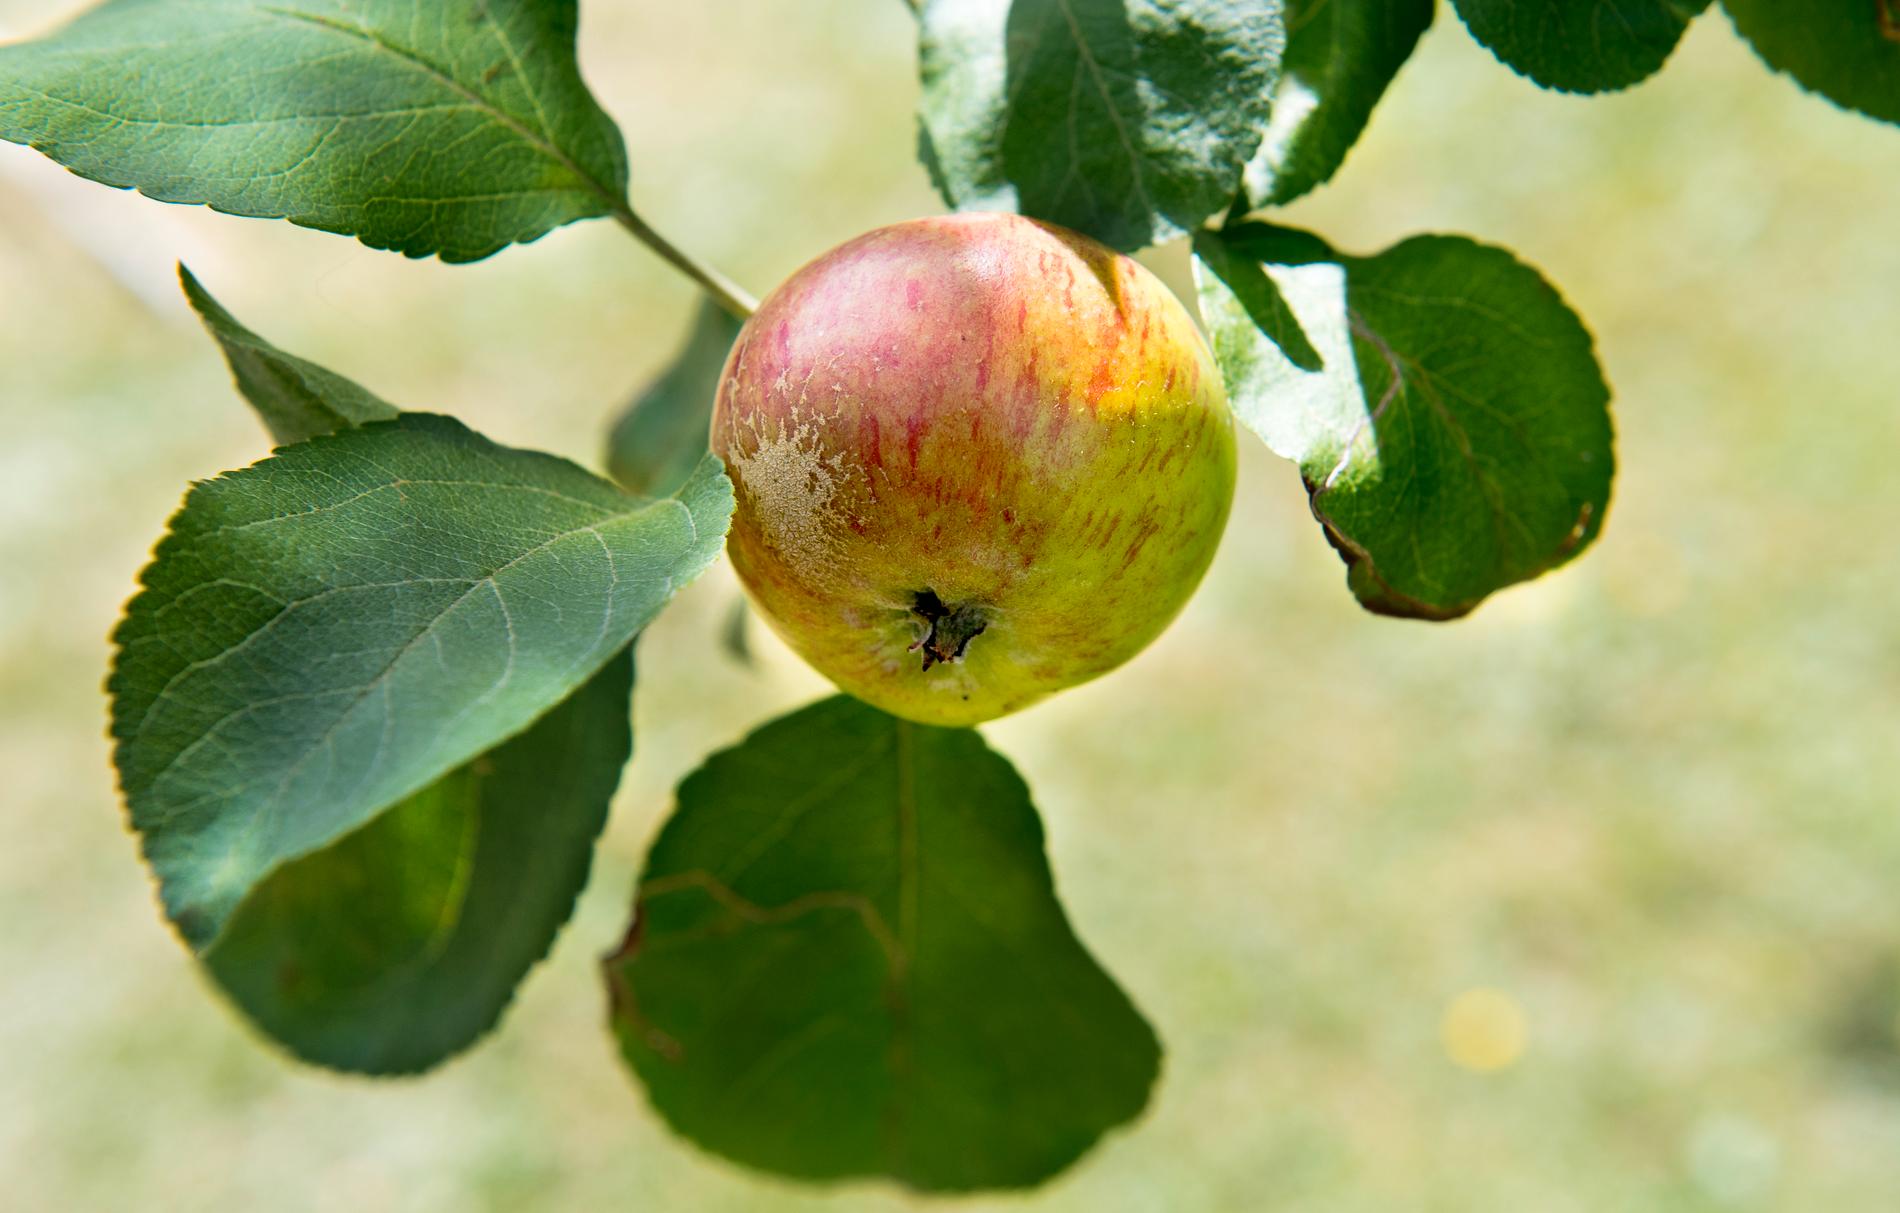 Fjolårets rikliga rönnblommning ligger bakom den störa inflygningen av rönnbärsmal i Skåne, enligt Jordbruksverket – och hotar nu äppelskörden. Arkivbild.